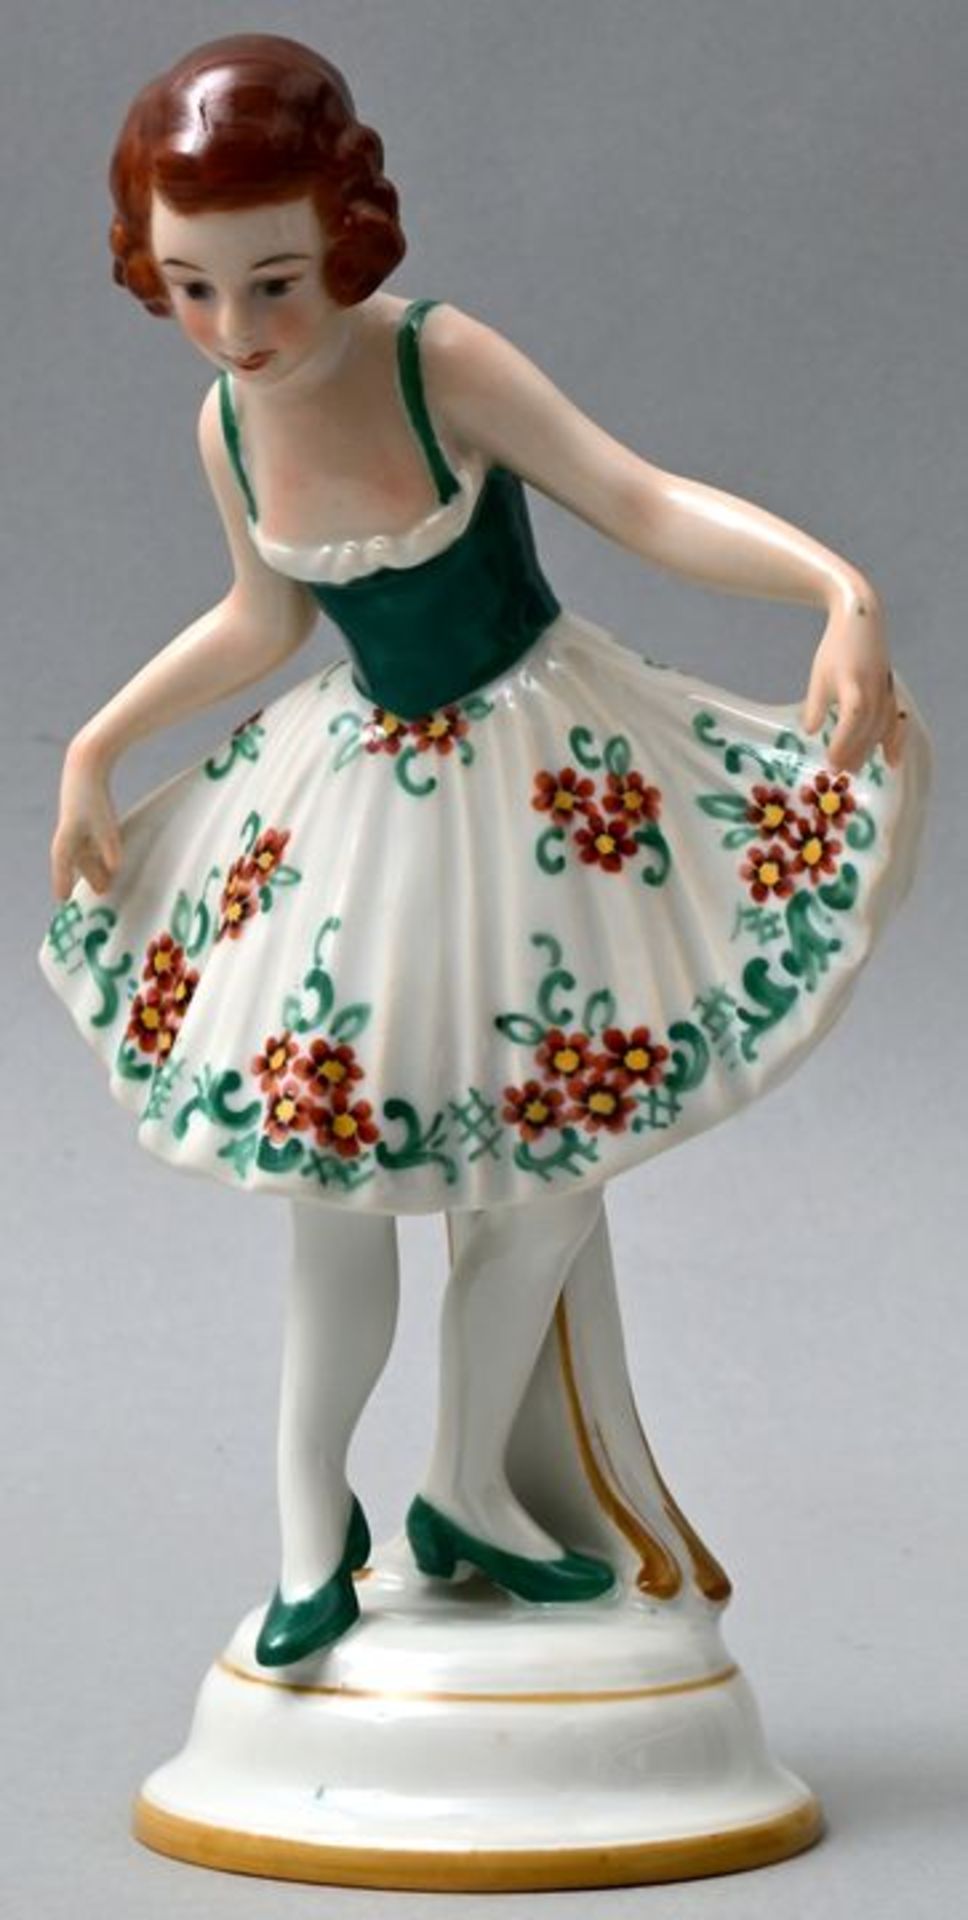 Vertikofigur Knicksende junge Dame / Porcelain figure